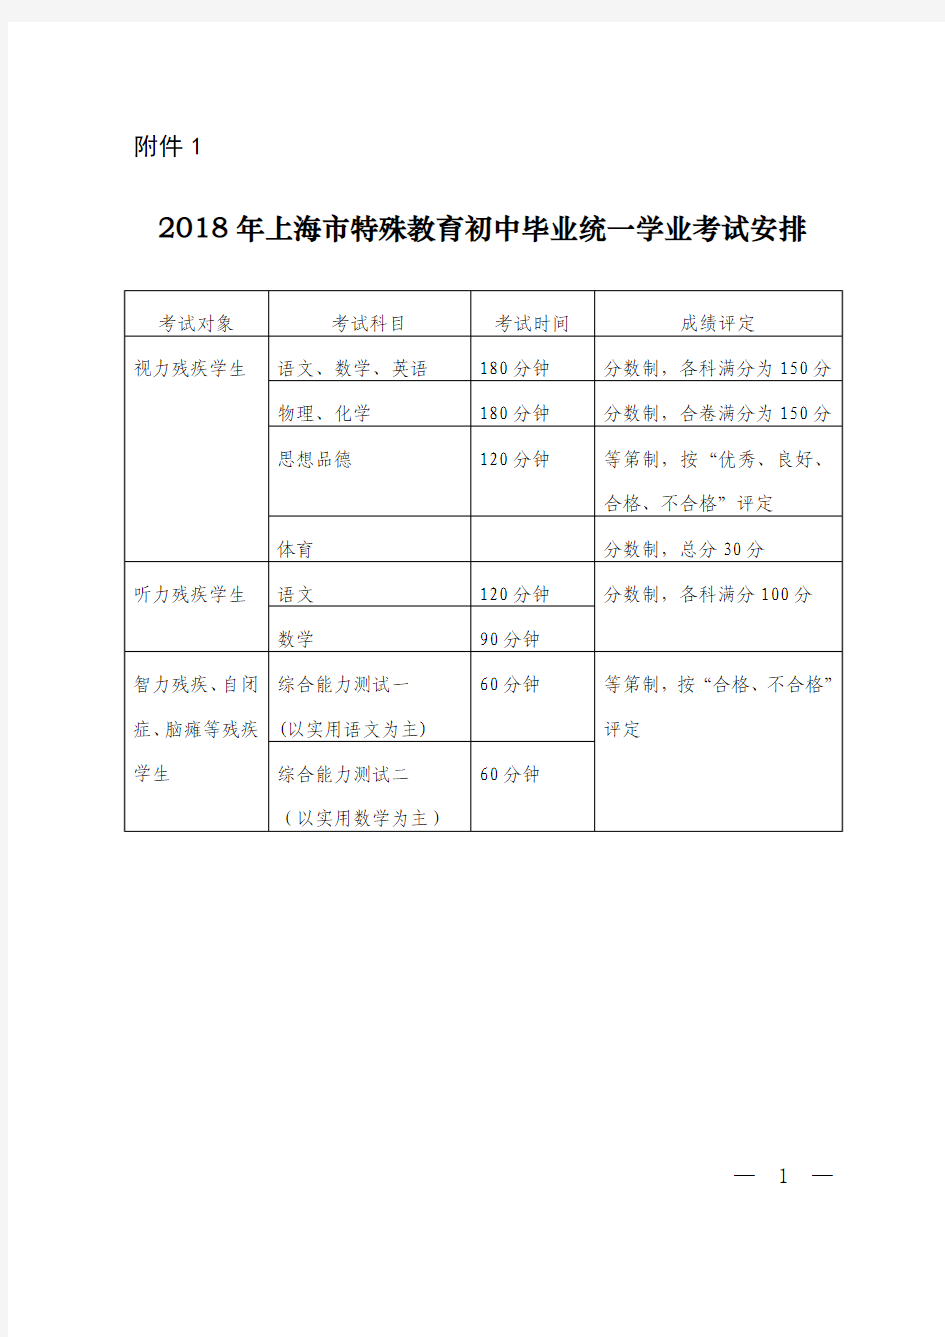 2018年上海市特殊教育初中毕业统一学业考试安排、考试流程、政策性照顾项目、学校招生公式内容(4份表格)